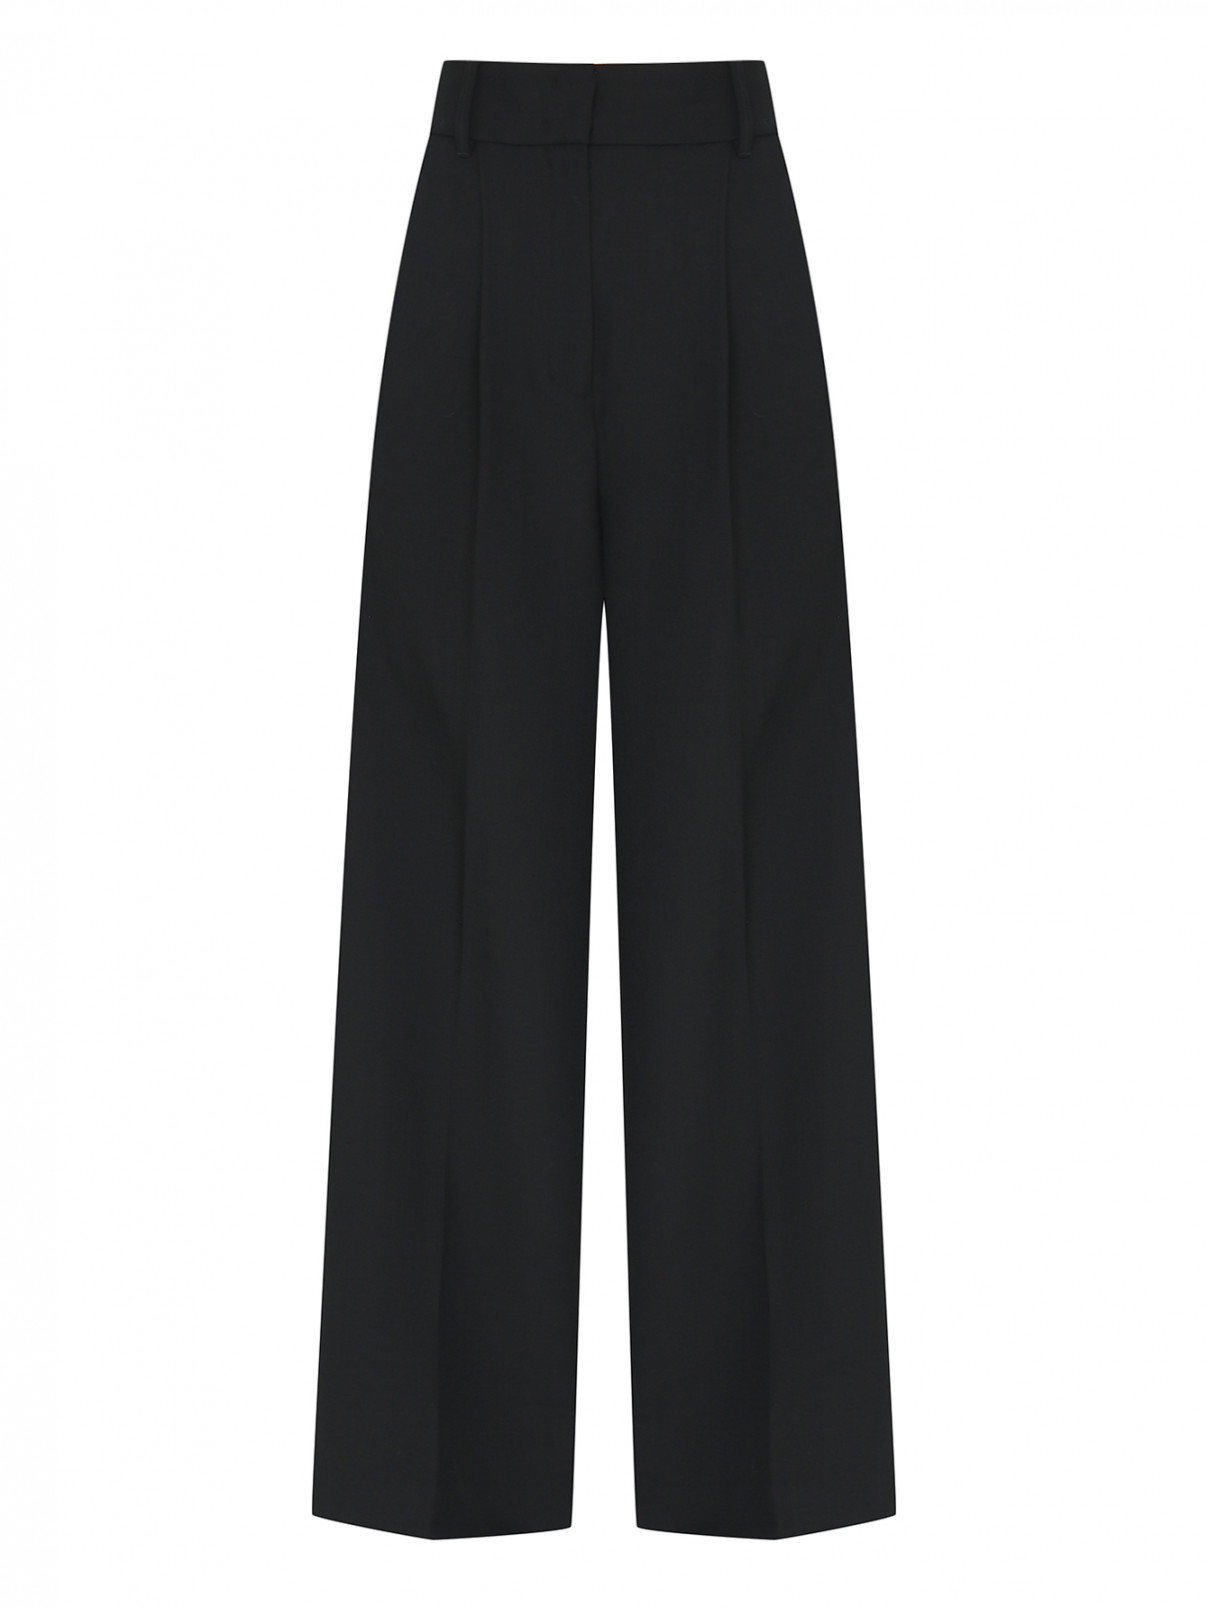 Широкие однотонные брюки Dorothee Schumacher  –  Общий вид  – Цвет:  Черный